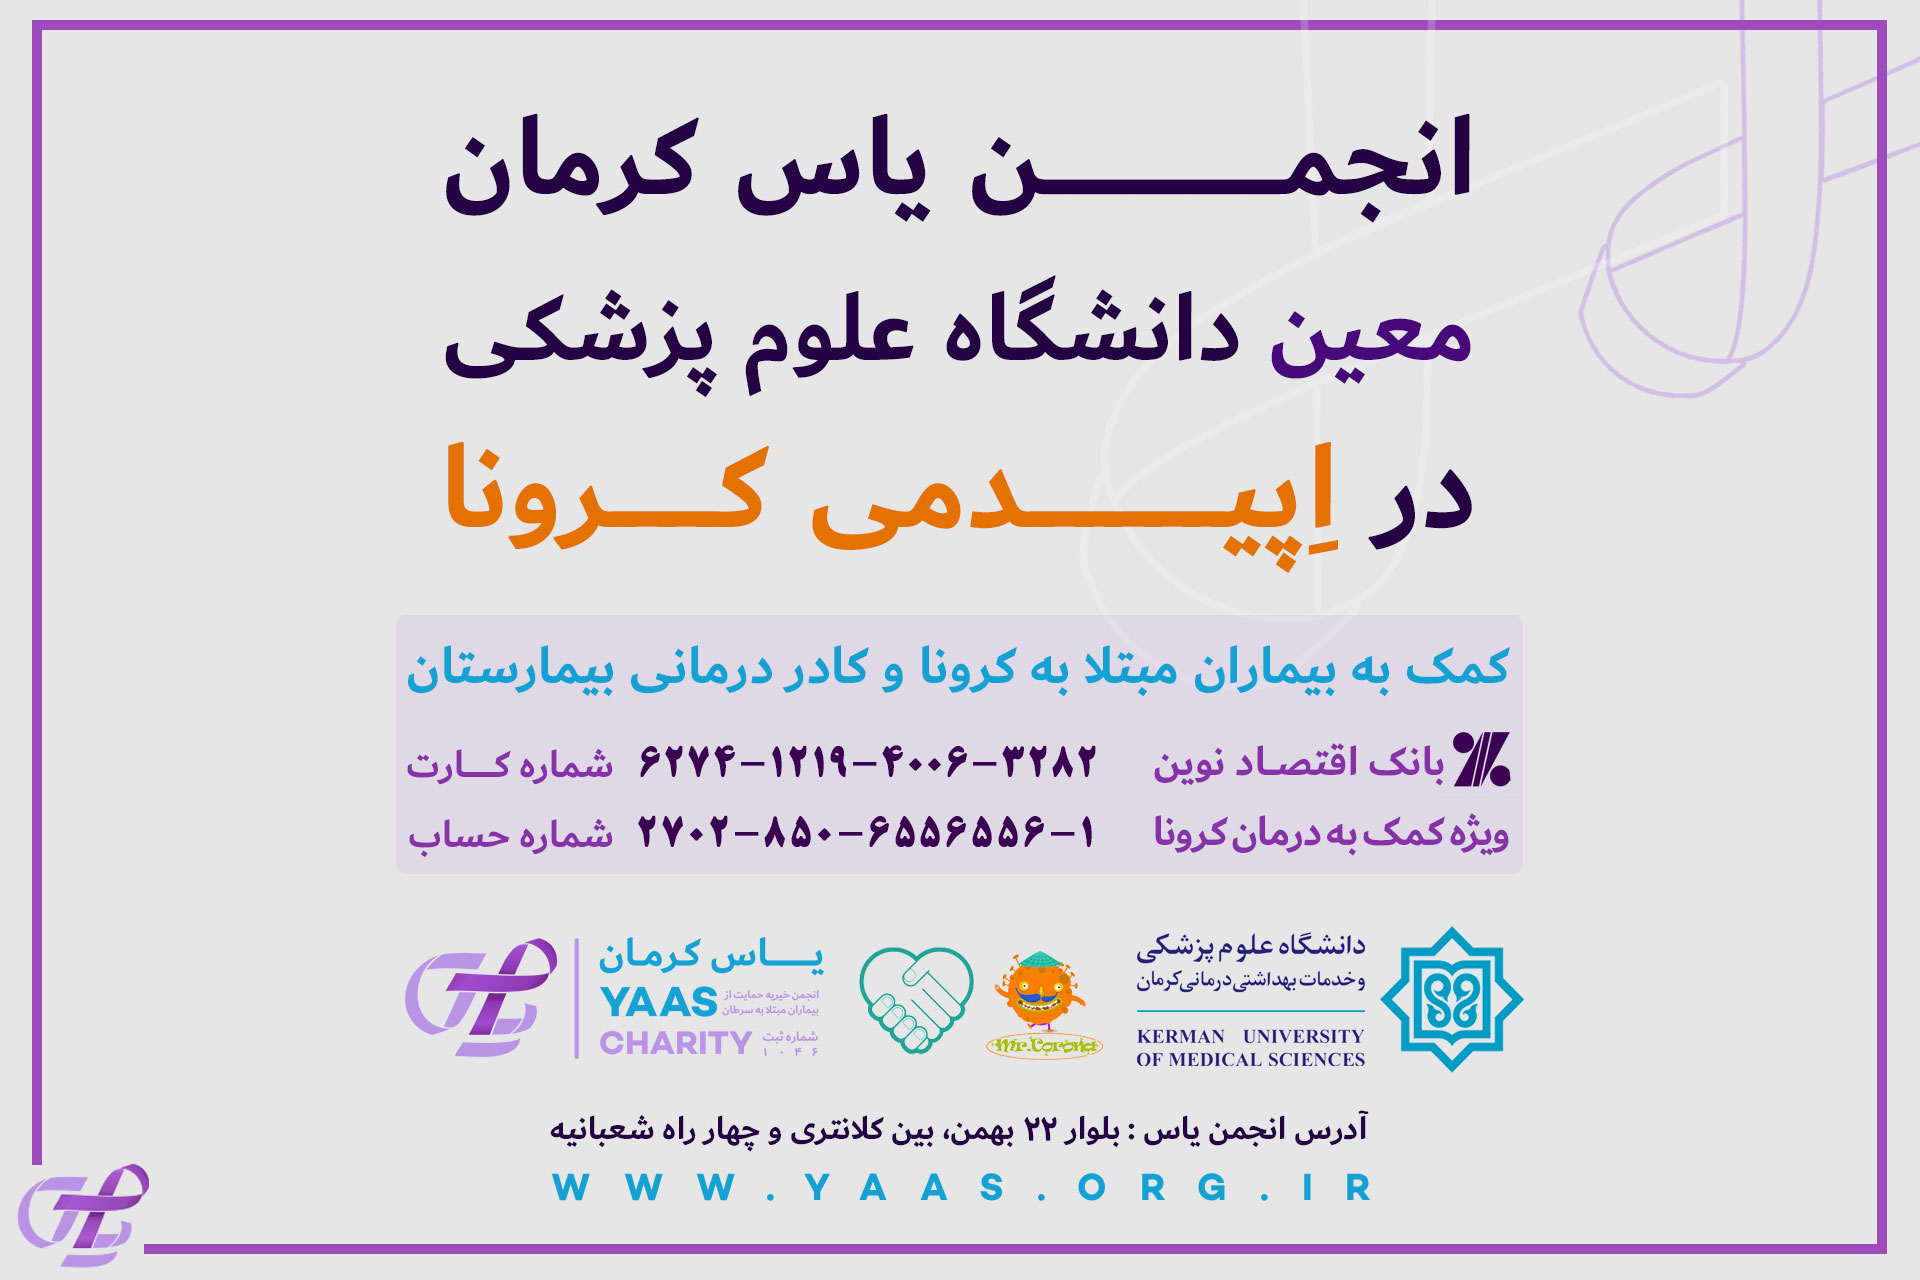 انجمن خیریه یاس کرمان در مقابله با بیماری کرونا کارهای ارزنده ای انجام داده است